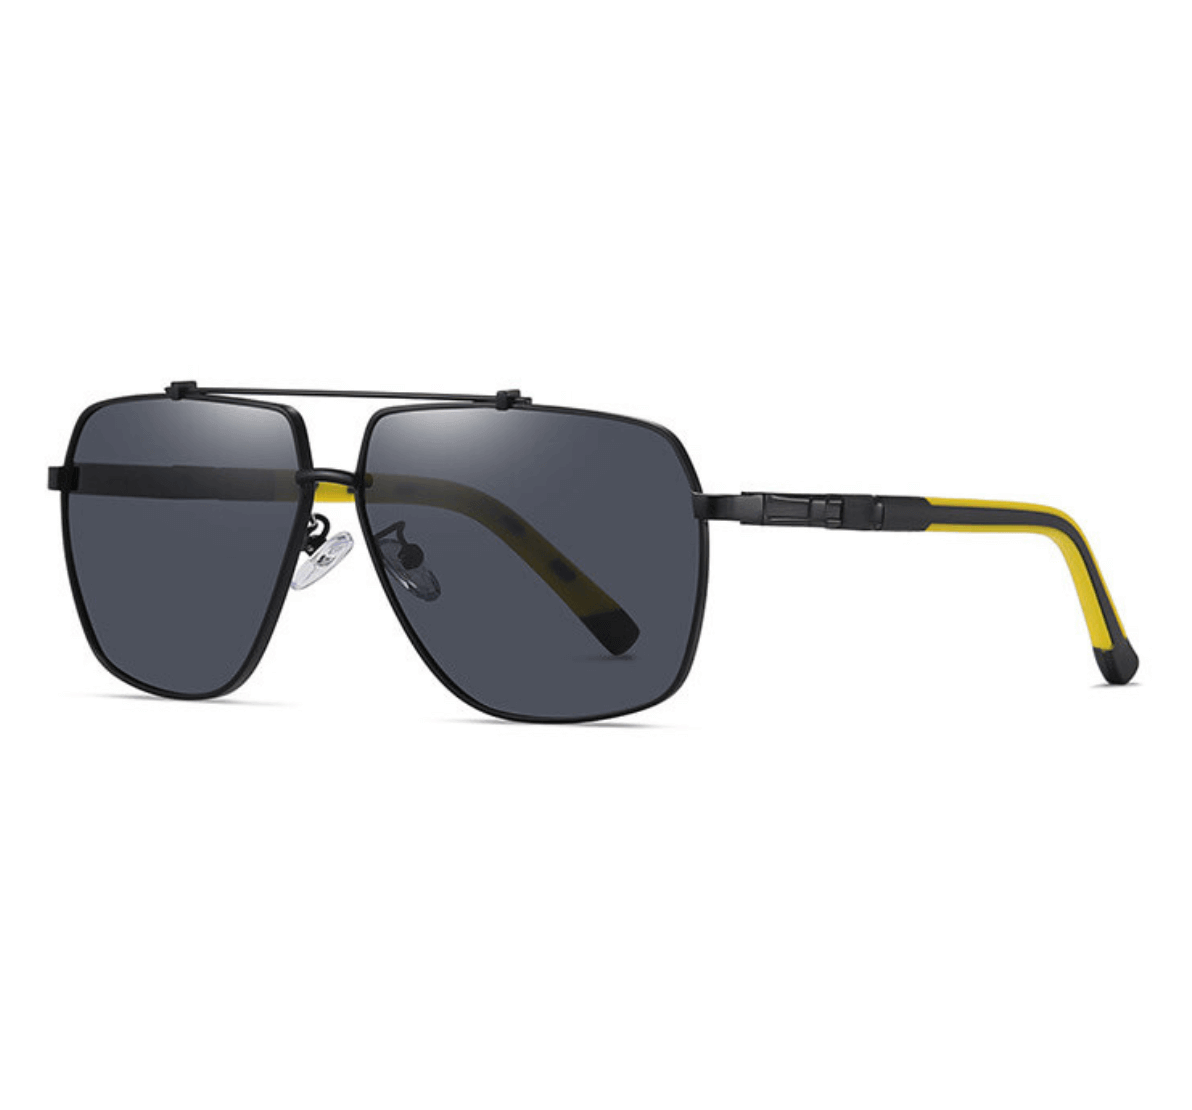 Custom Polarized Sunglasses, fashion beam aviator sunglasses, custom logo polarized sunglasses, custom sunglasses with logo, Sunglasses Manufacturer, eyewear manufacturer